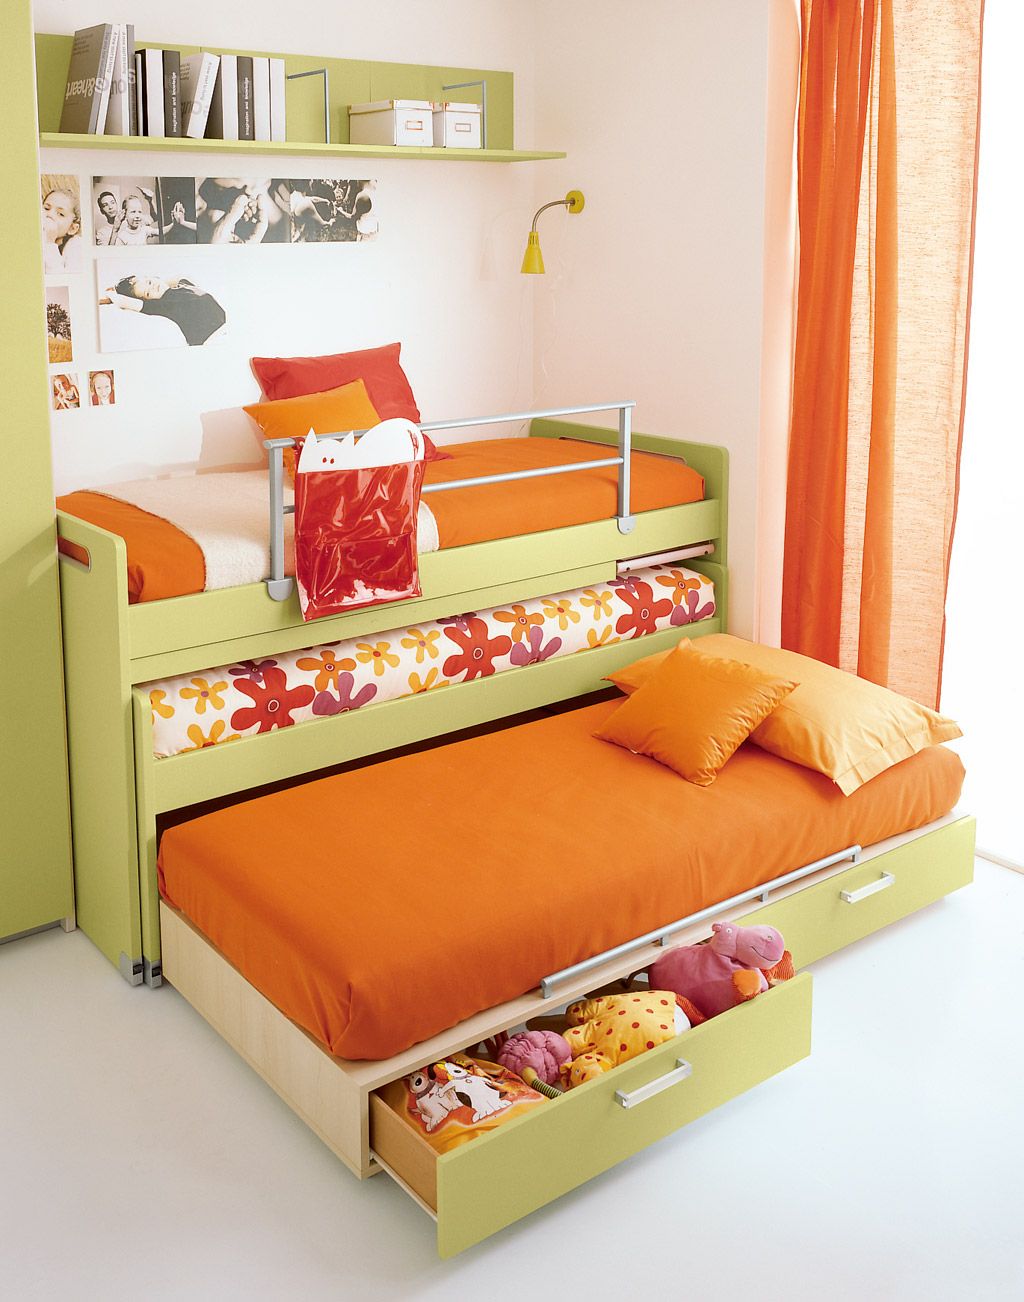 Кровать с двумя выдвижными спальными местами и ящиками для игрушек